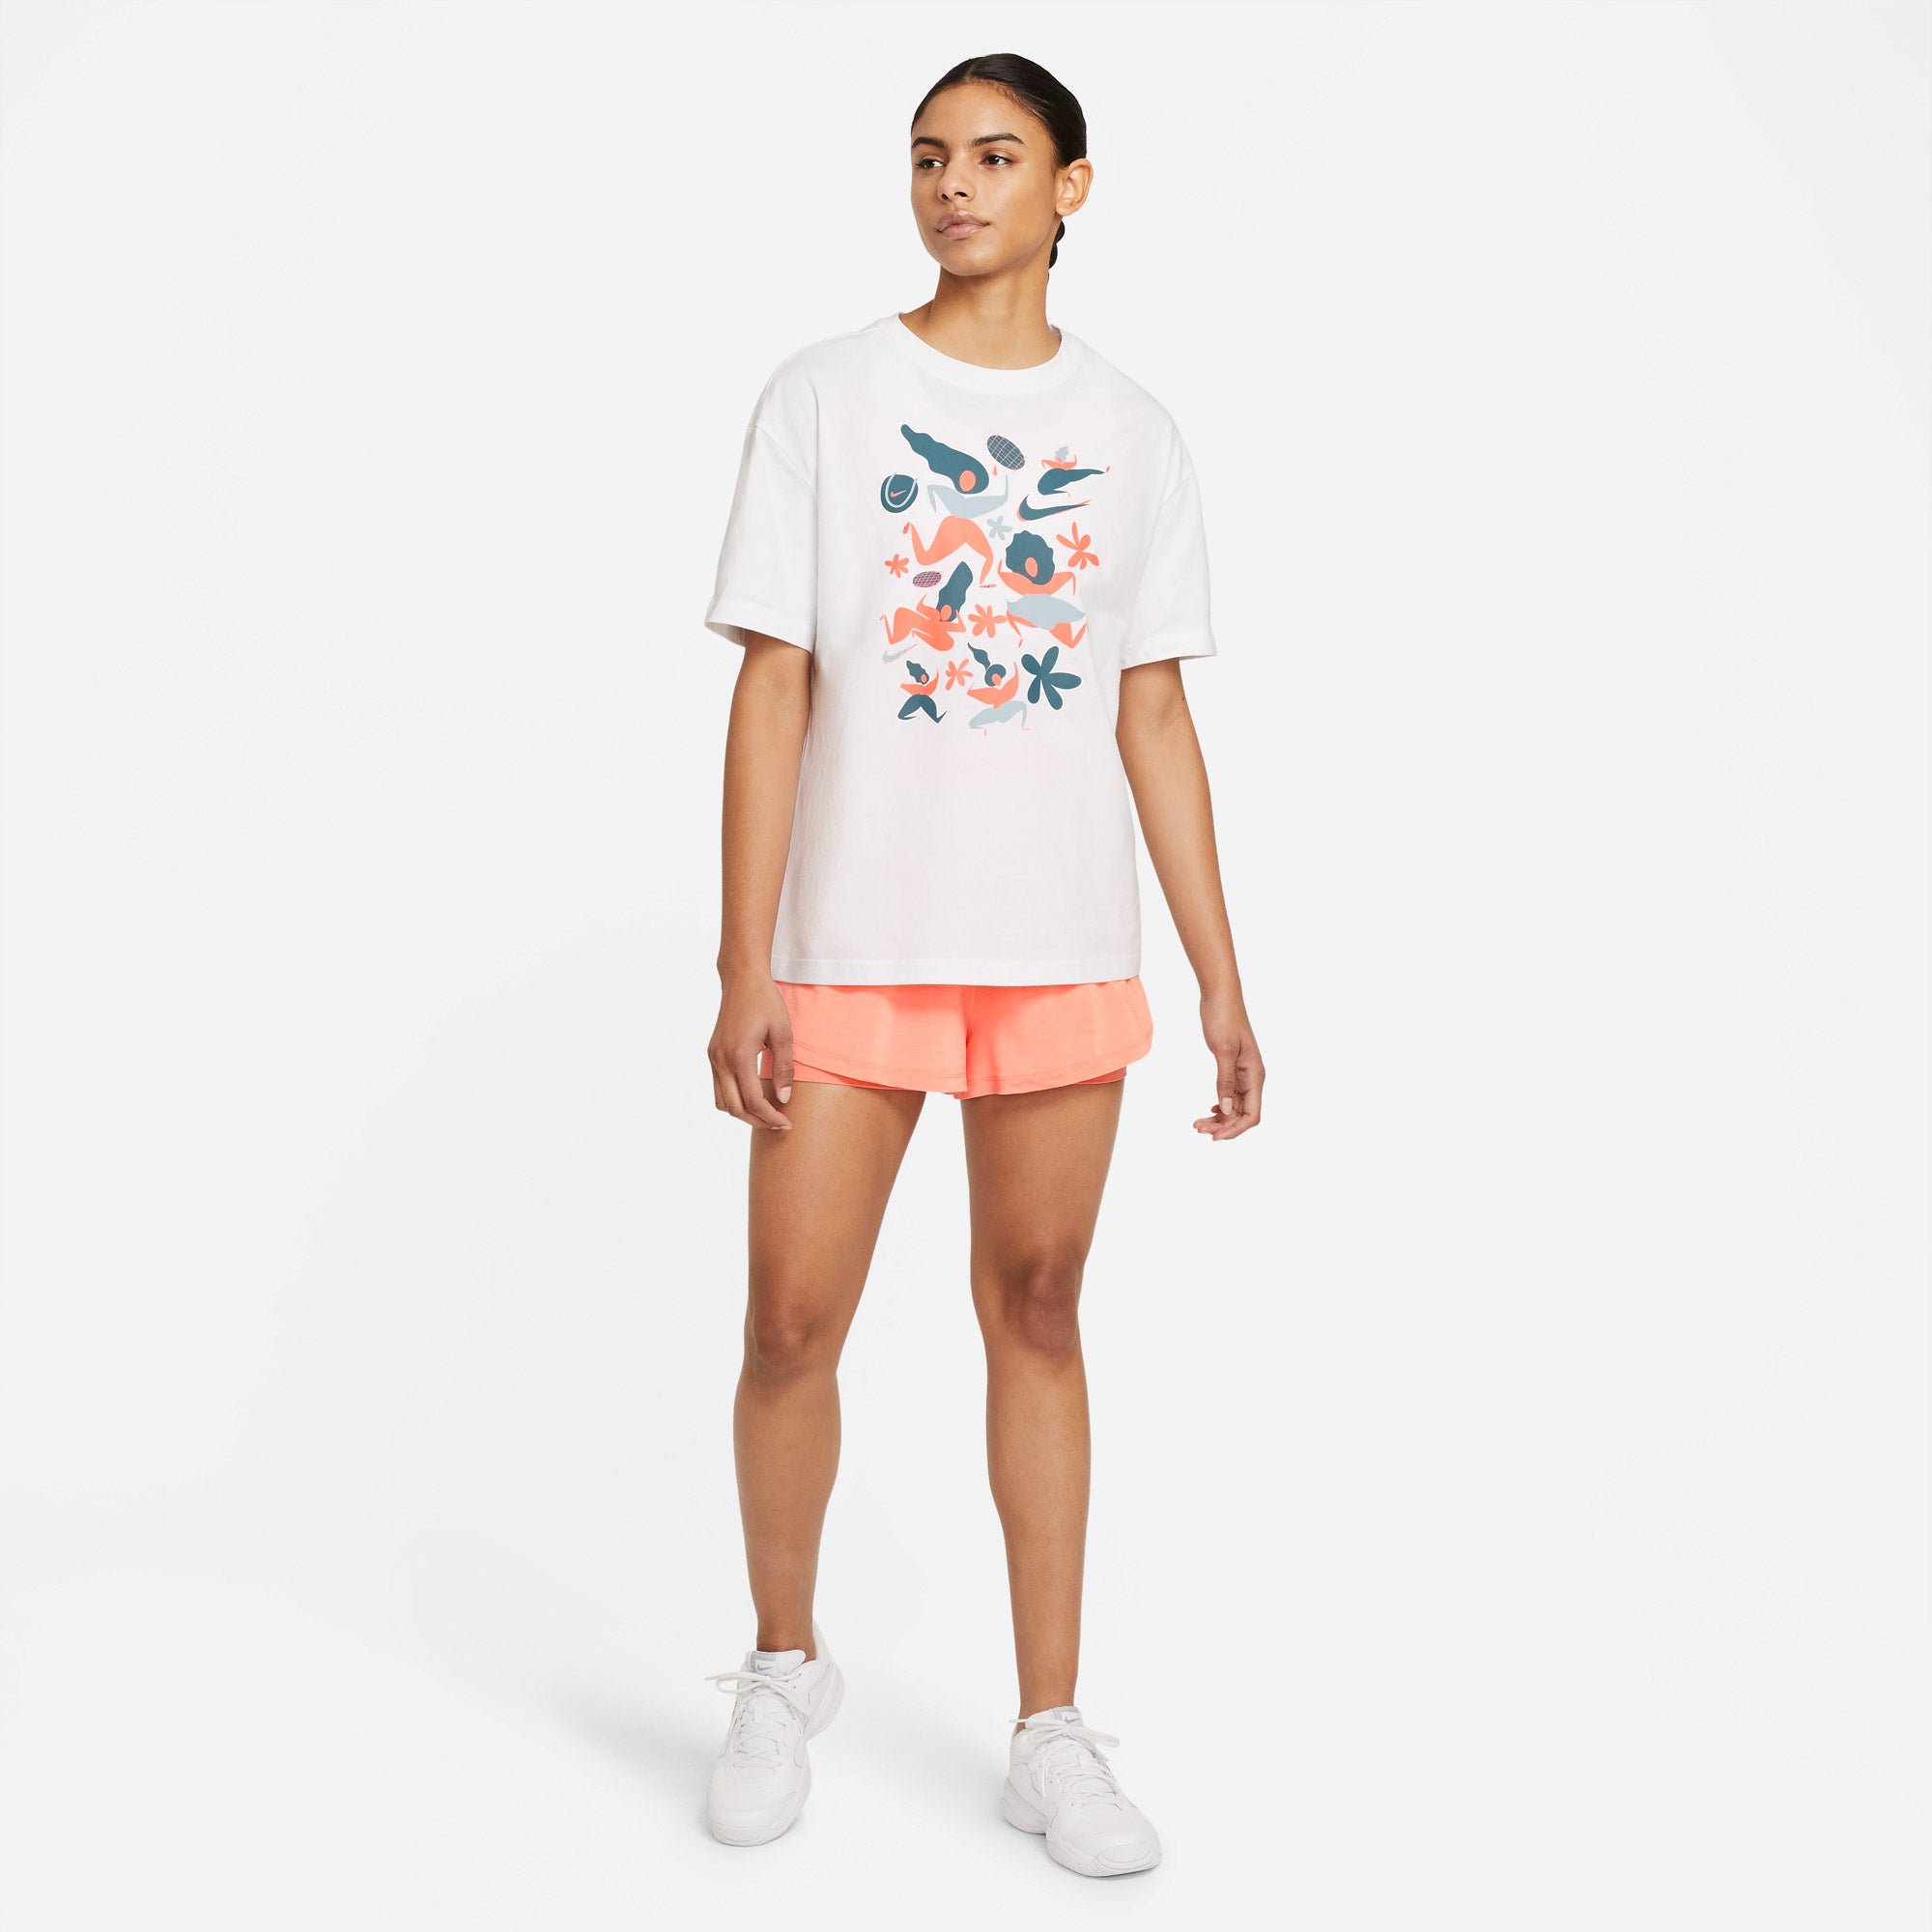 Nike Women's Graphic Tennis T-Shirt White (3)